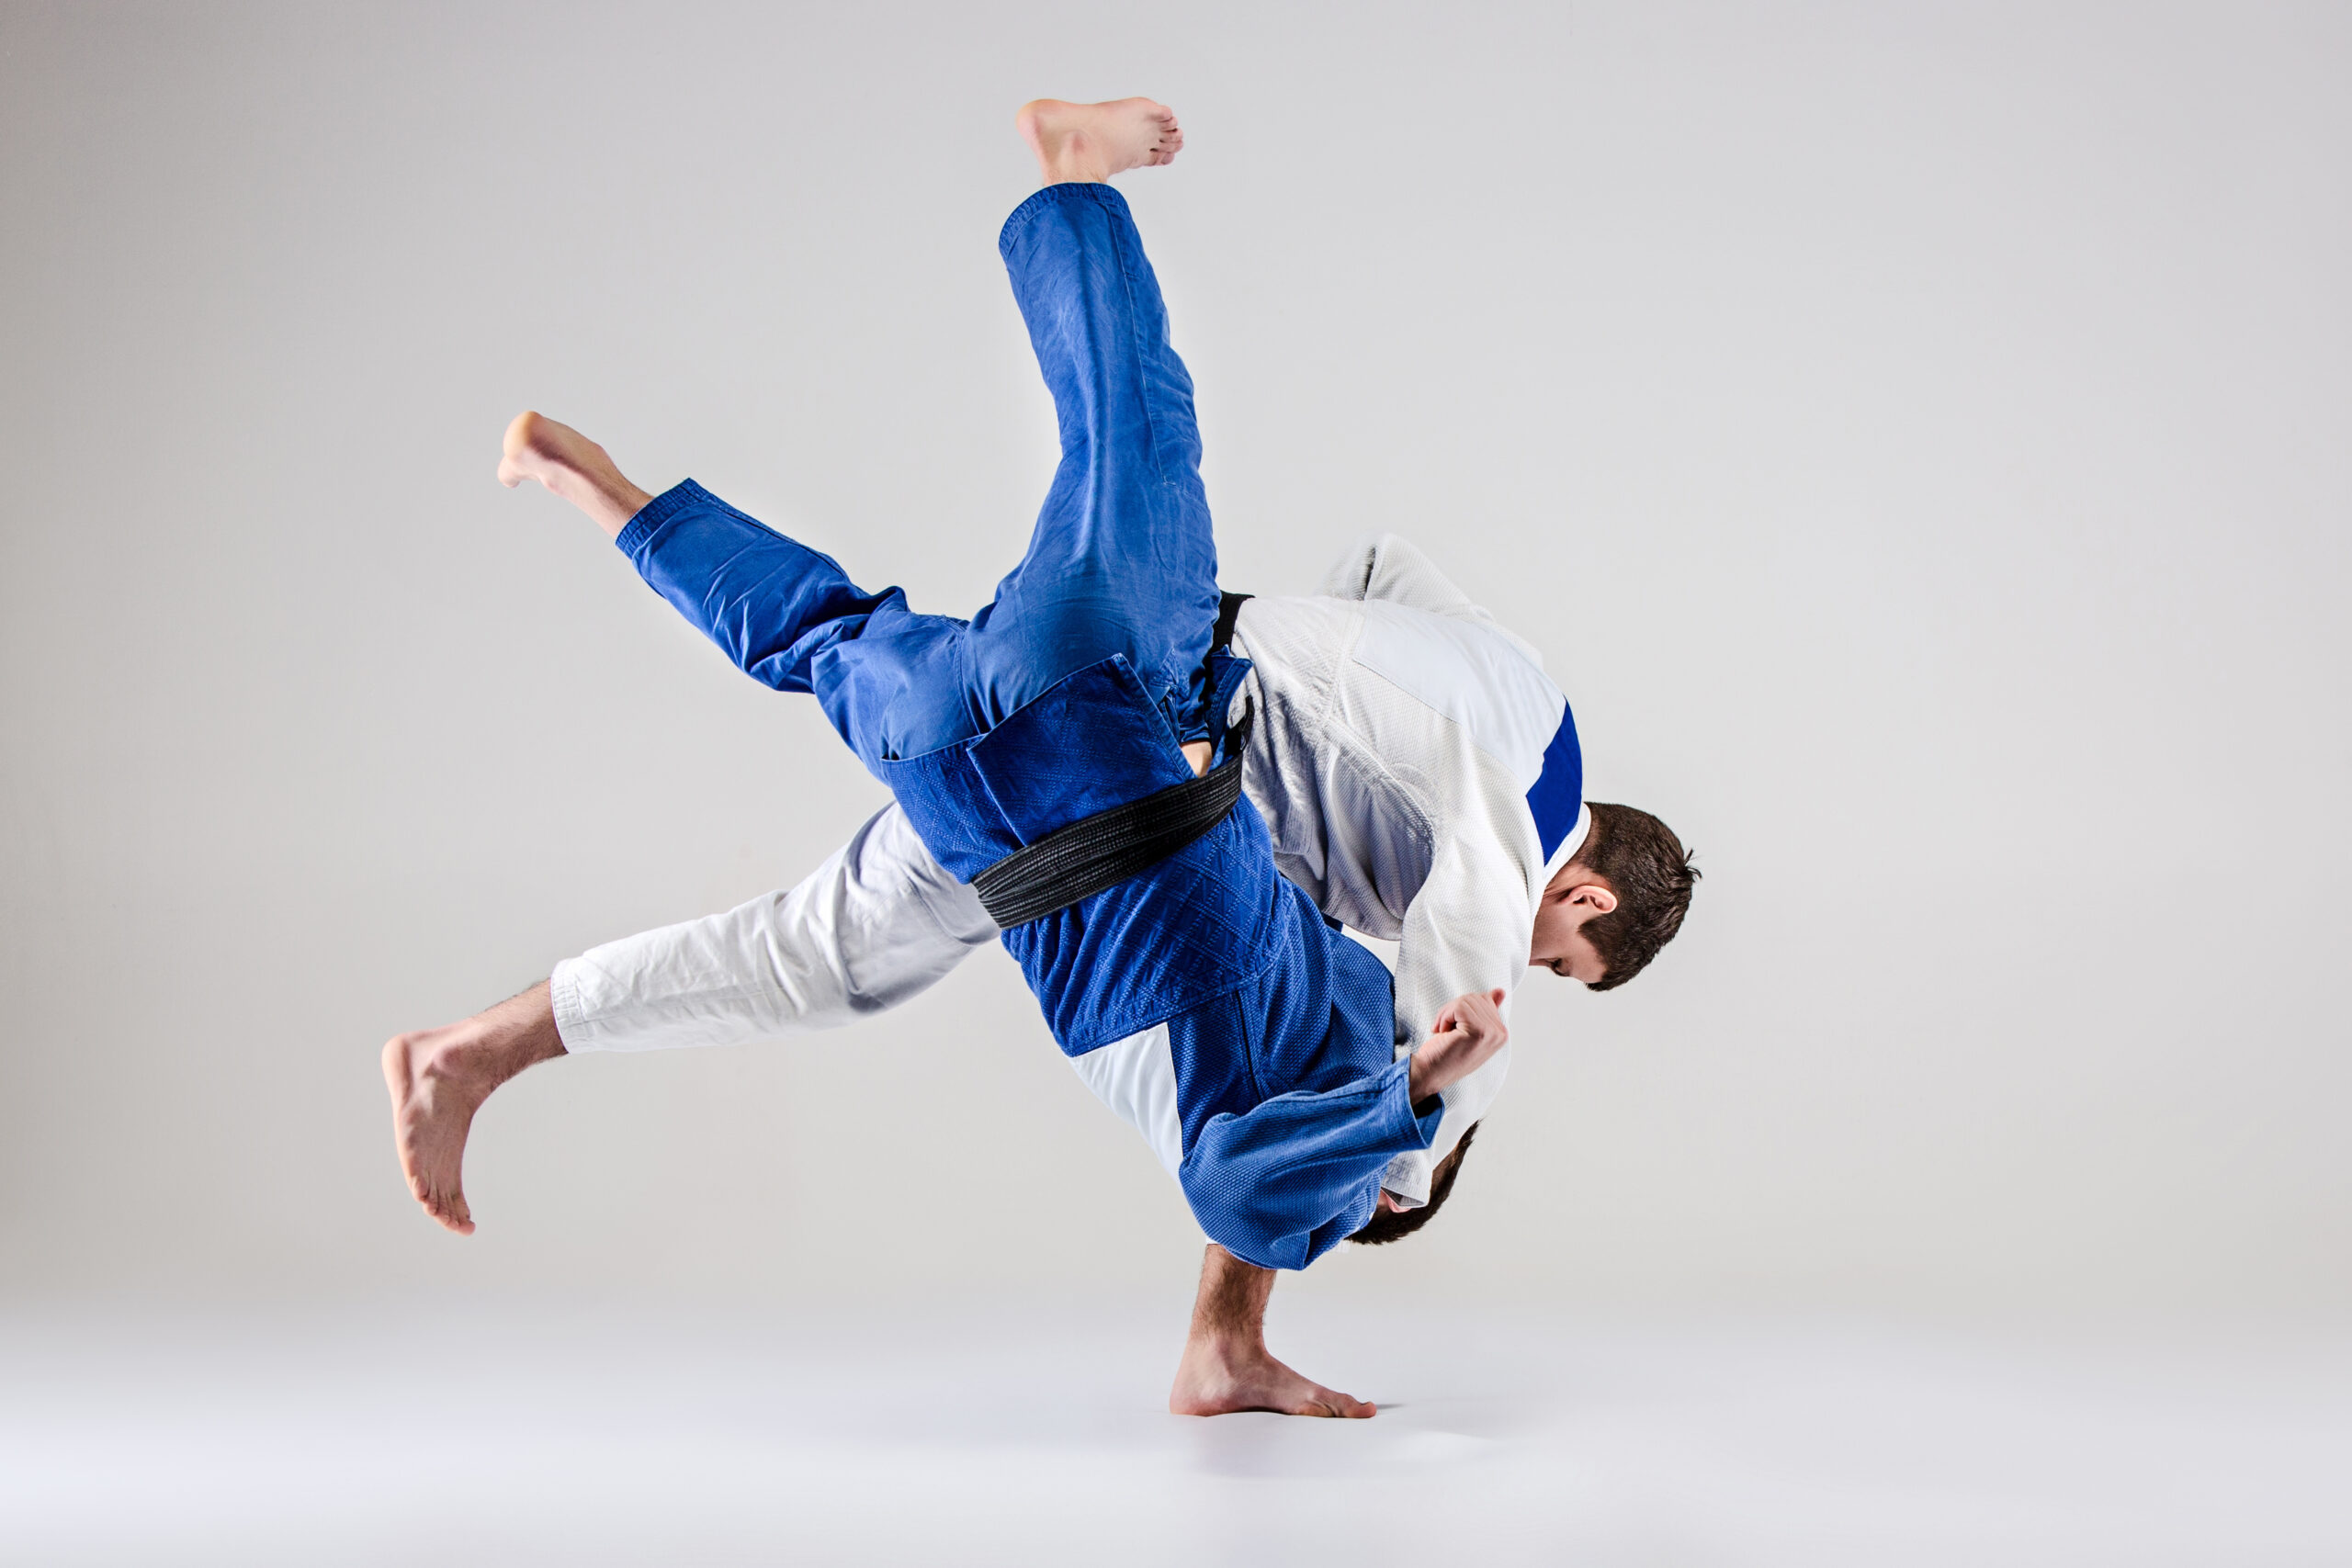 Judo/Jiu Jitsu & Sambo training